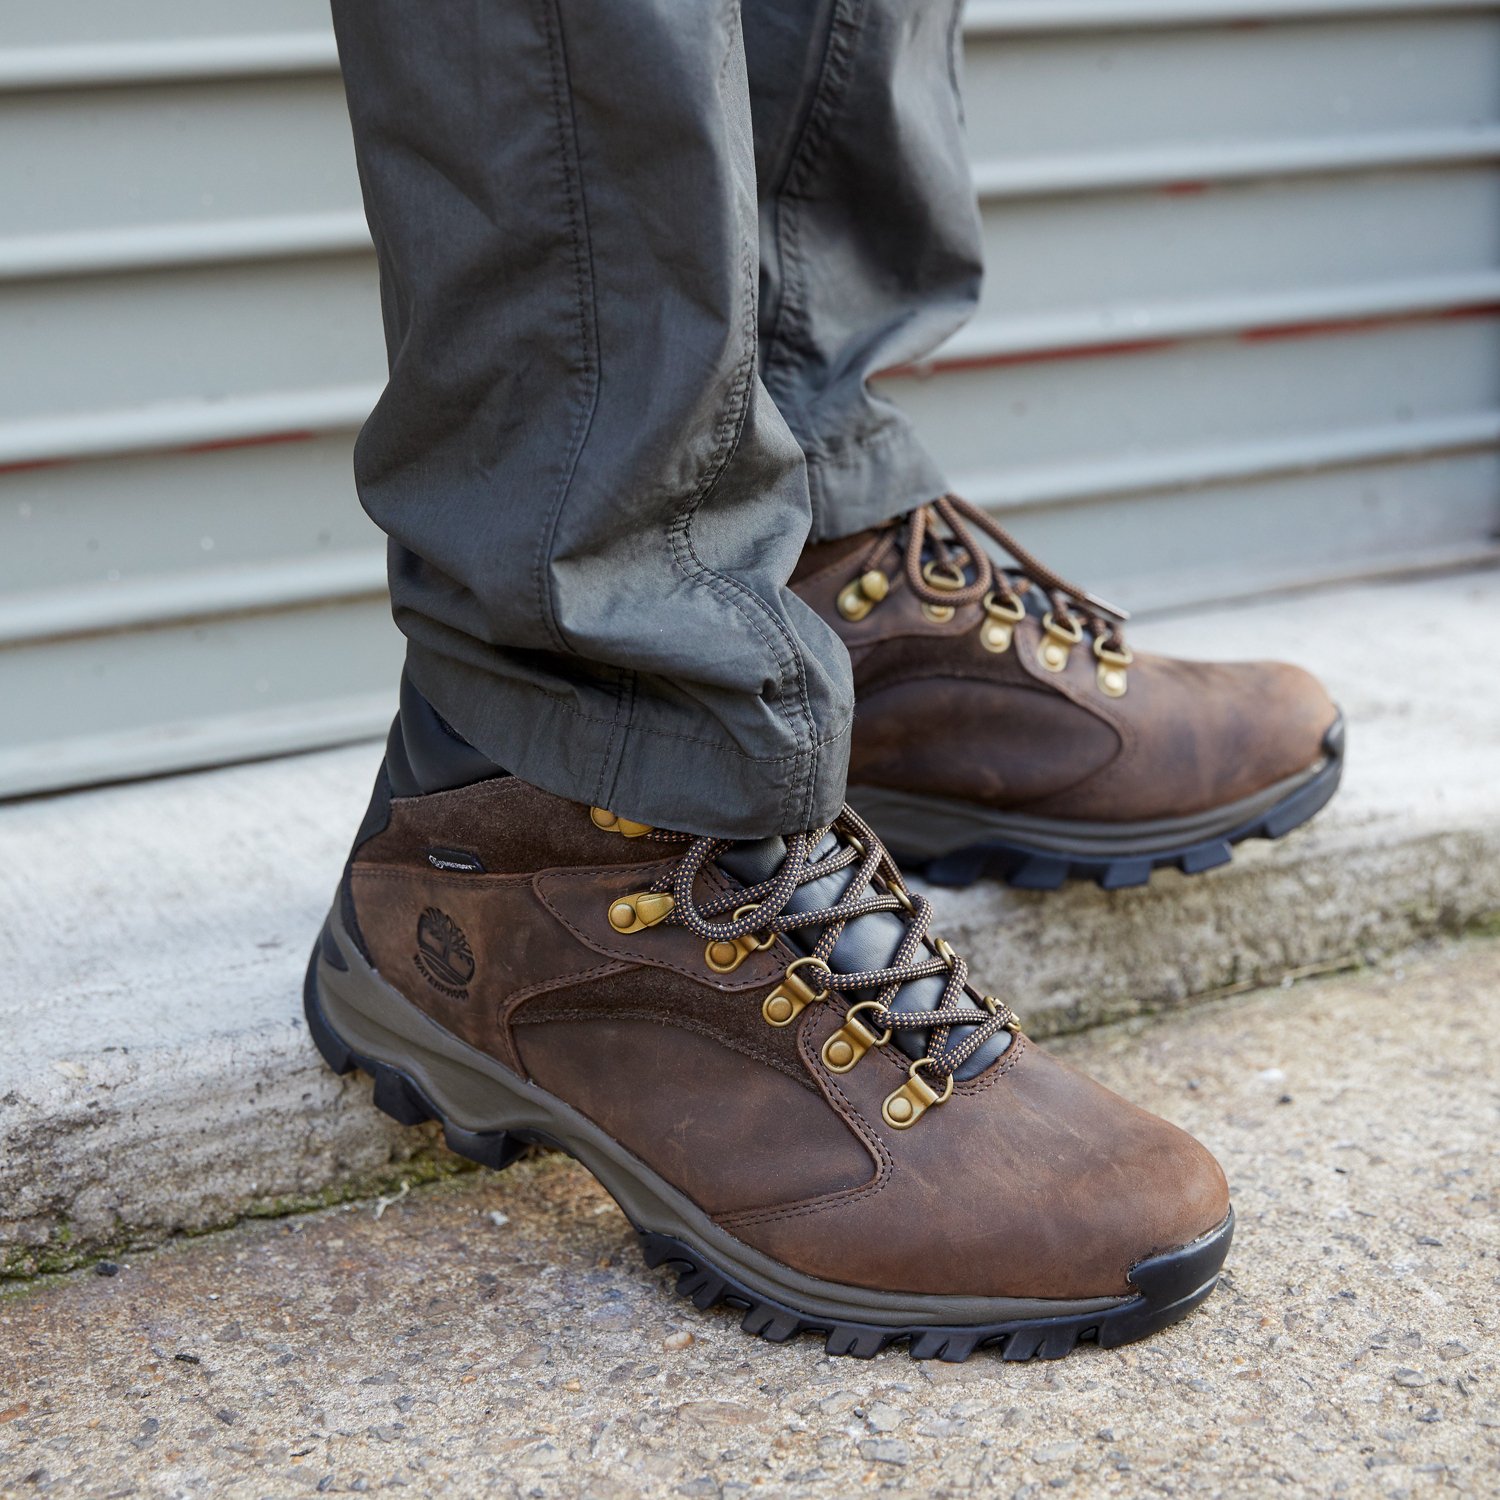 Voorschrijven Bedankt account Timberland Men's Rock Rimmon Waterproof Hiking Boots | Academy